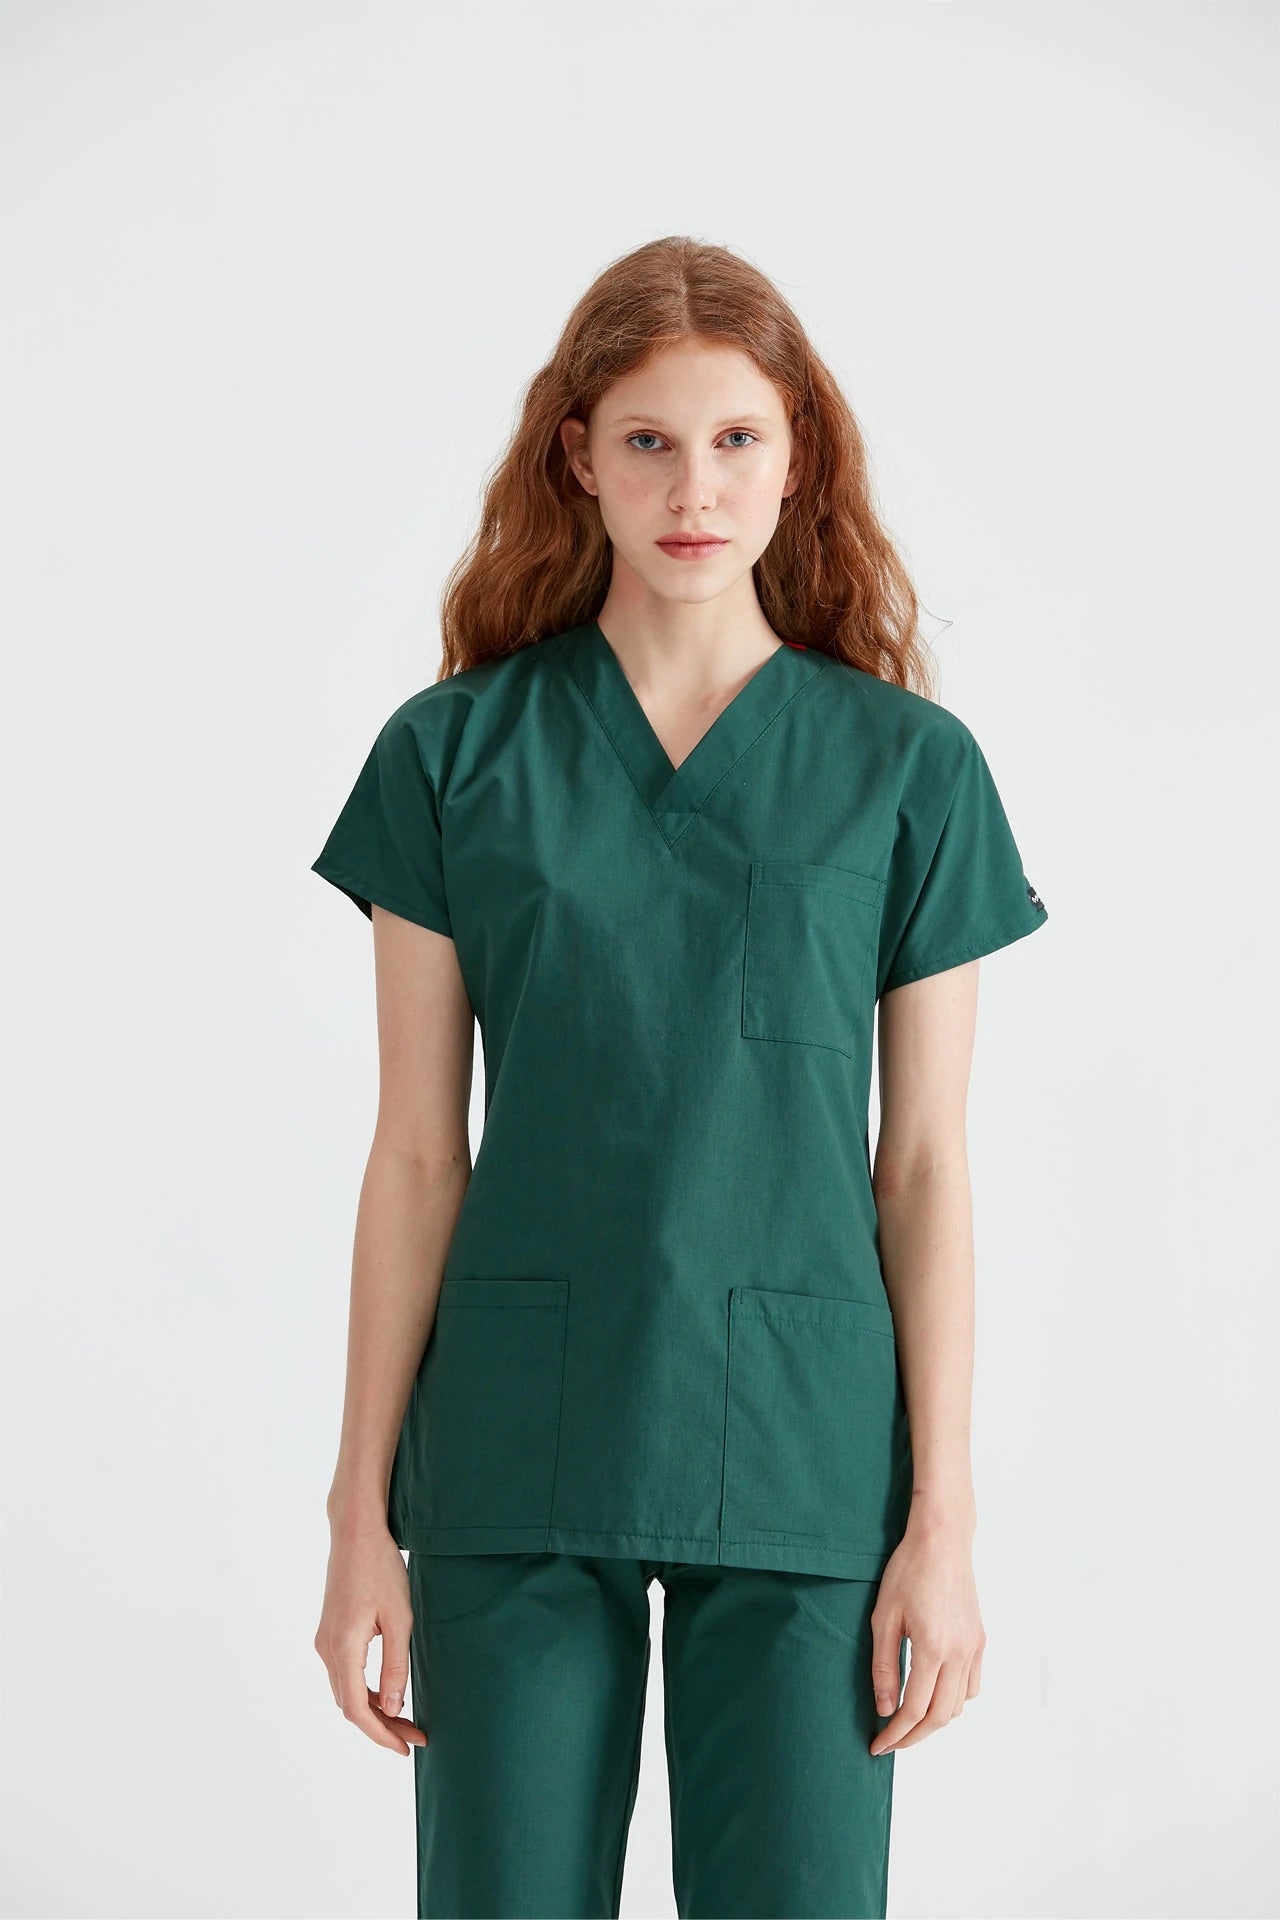 Costum Medical Verde Kaki, Pentru Femei - Khaki - Model Classic